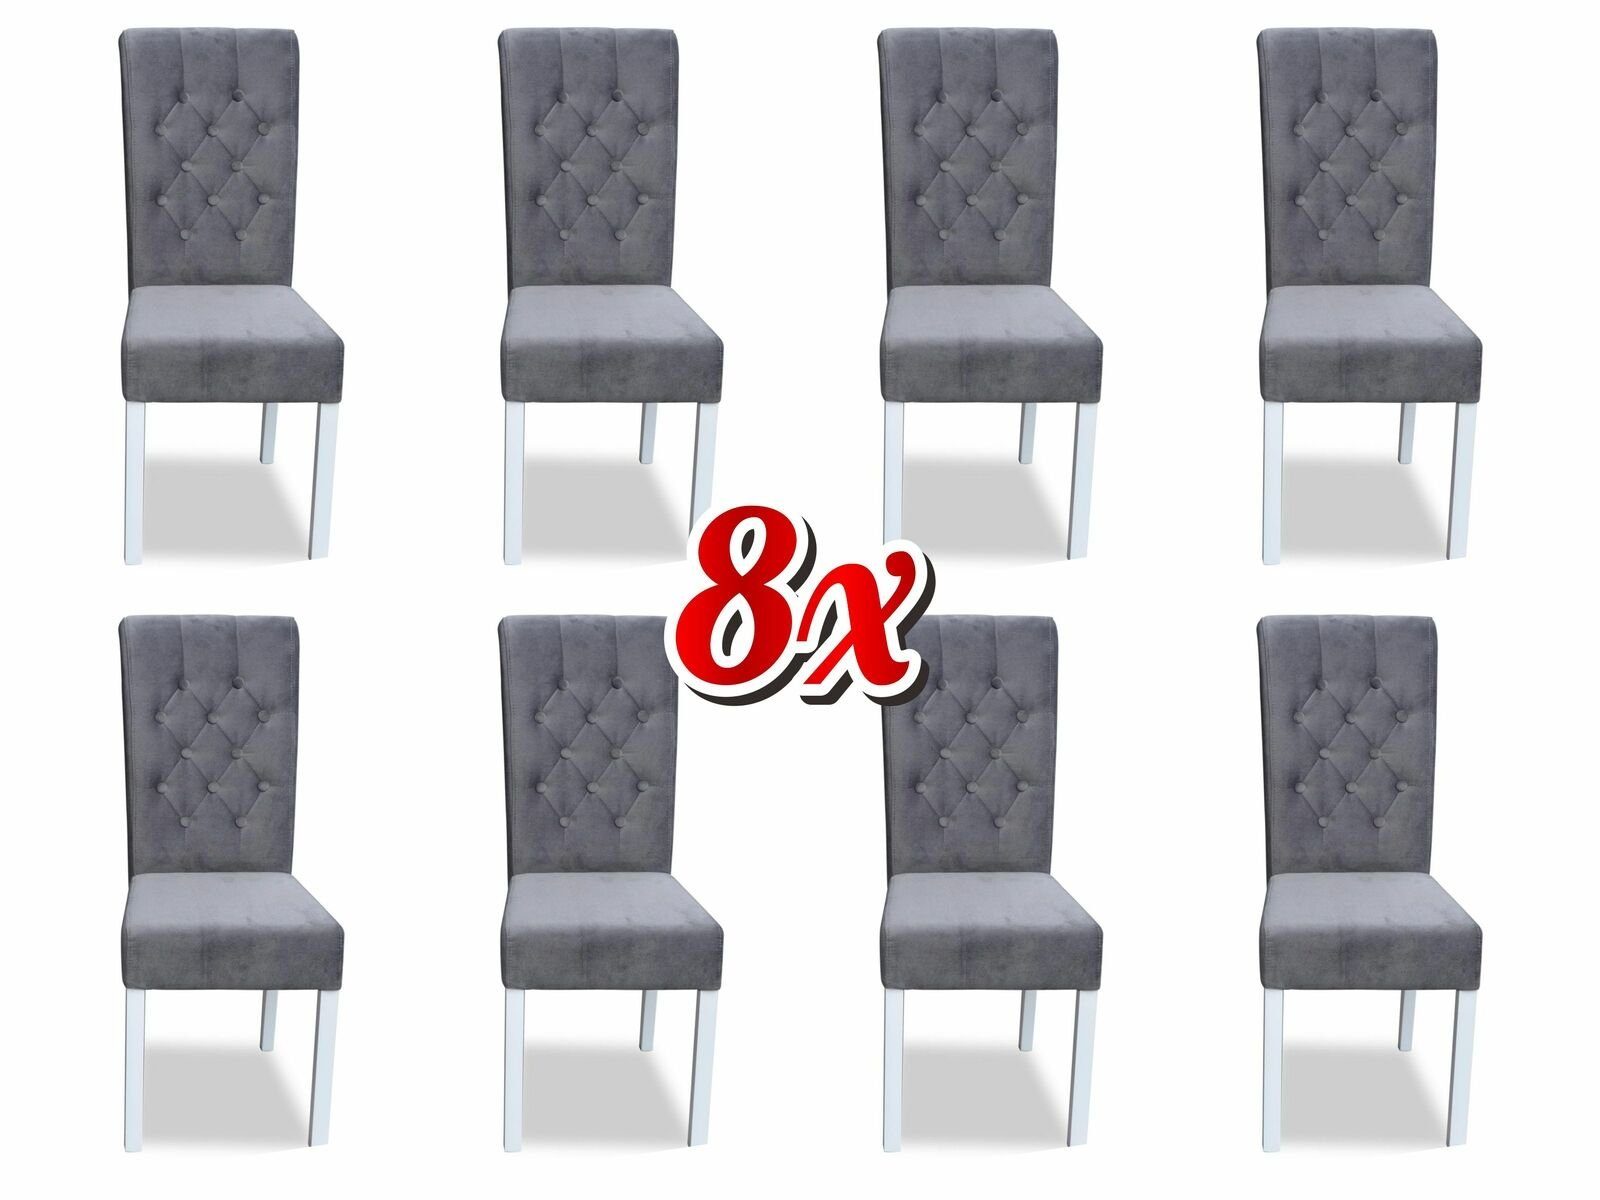 JVmoebel Stuhl, Chesterfield 8x Sessel Design Polster Stühle Stuhl Klassische Lehn Textil Holz Grau